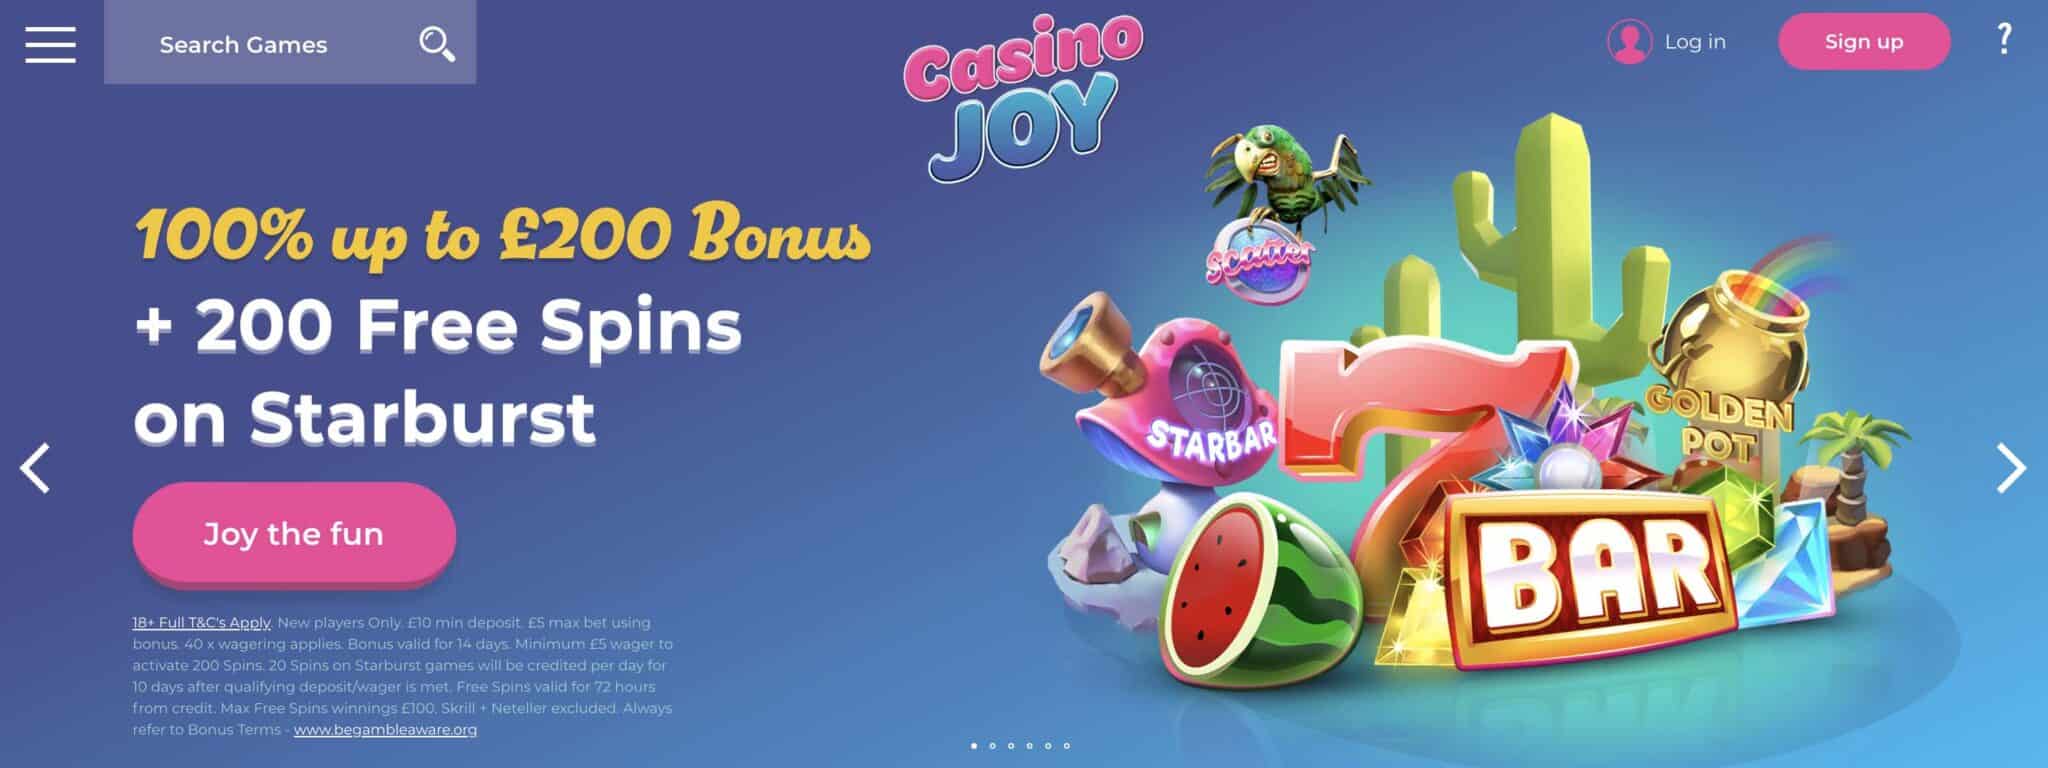 casino joy free bonus